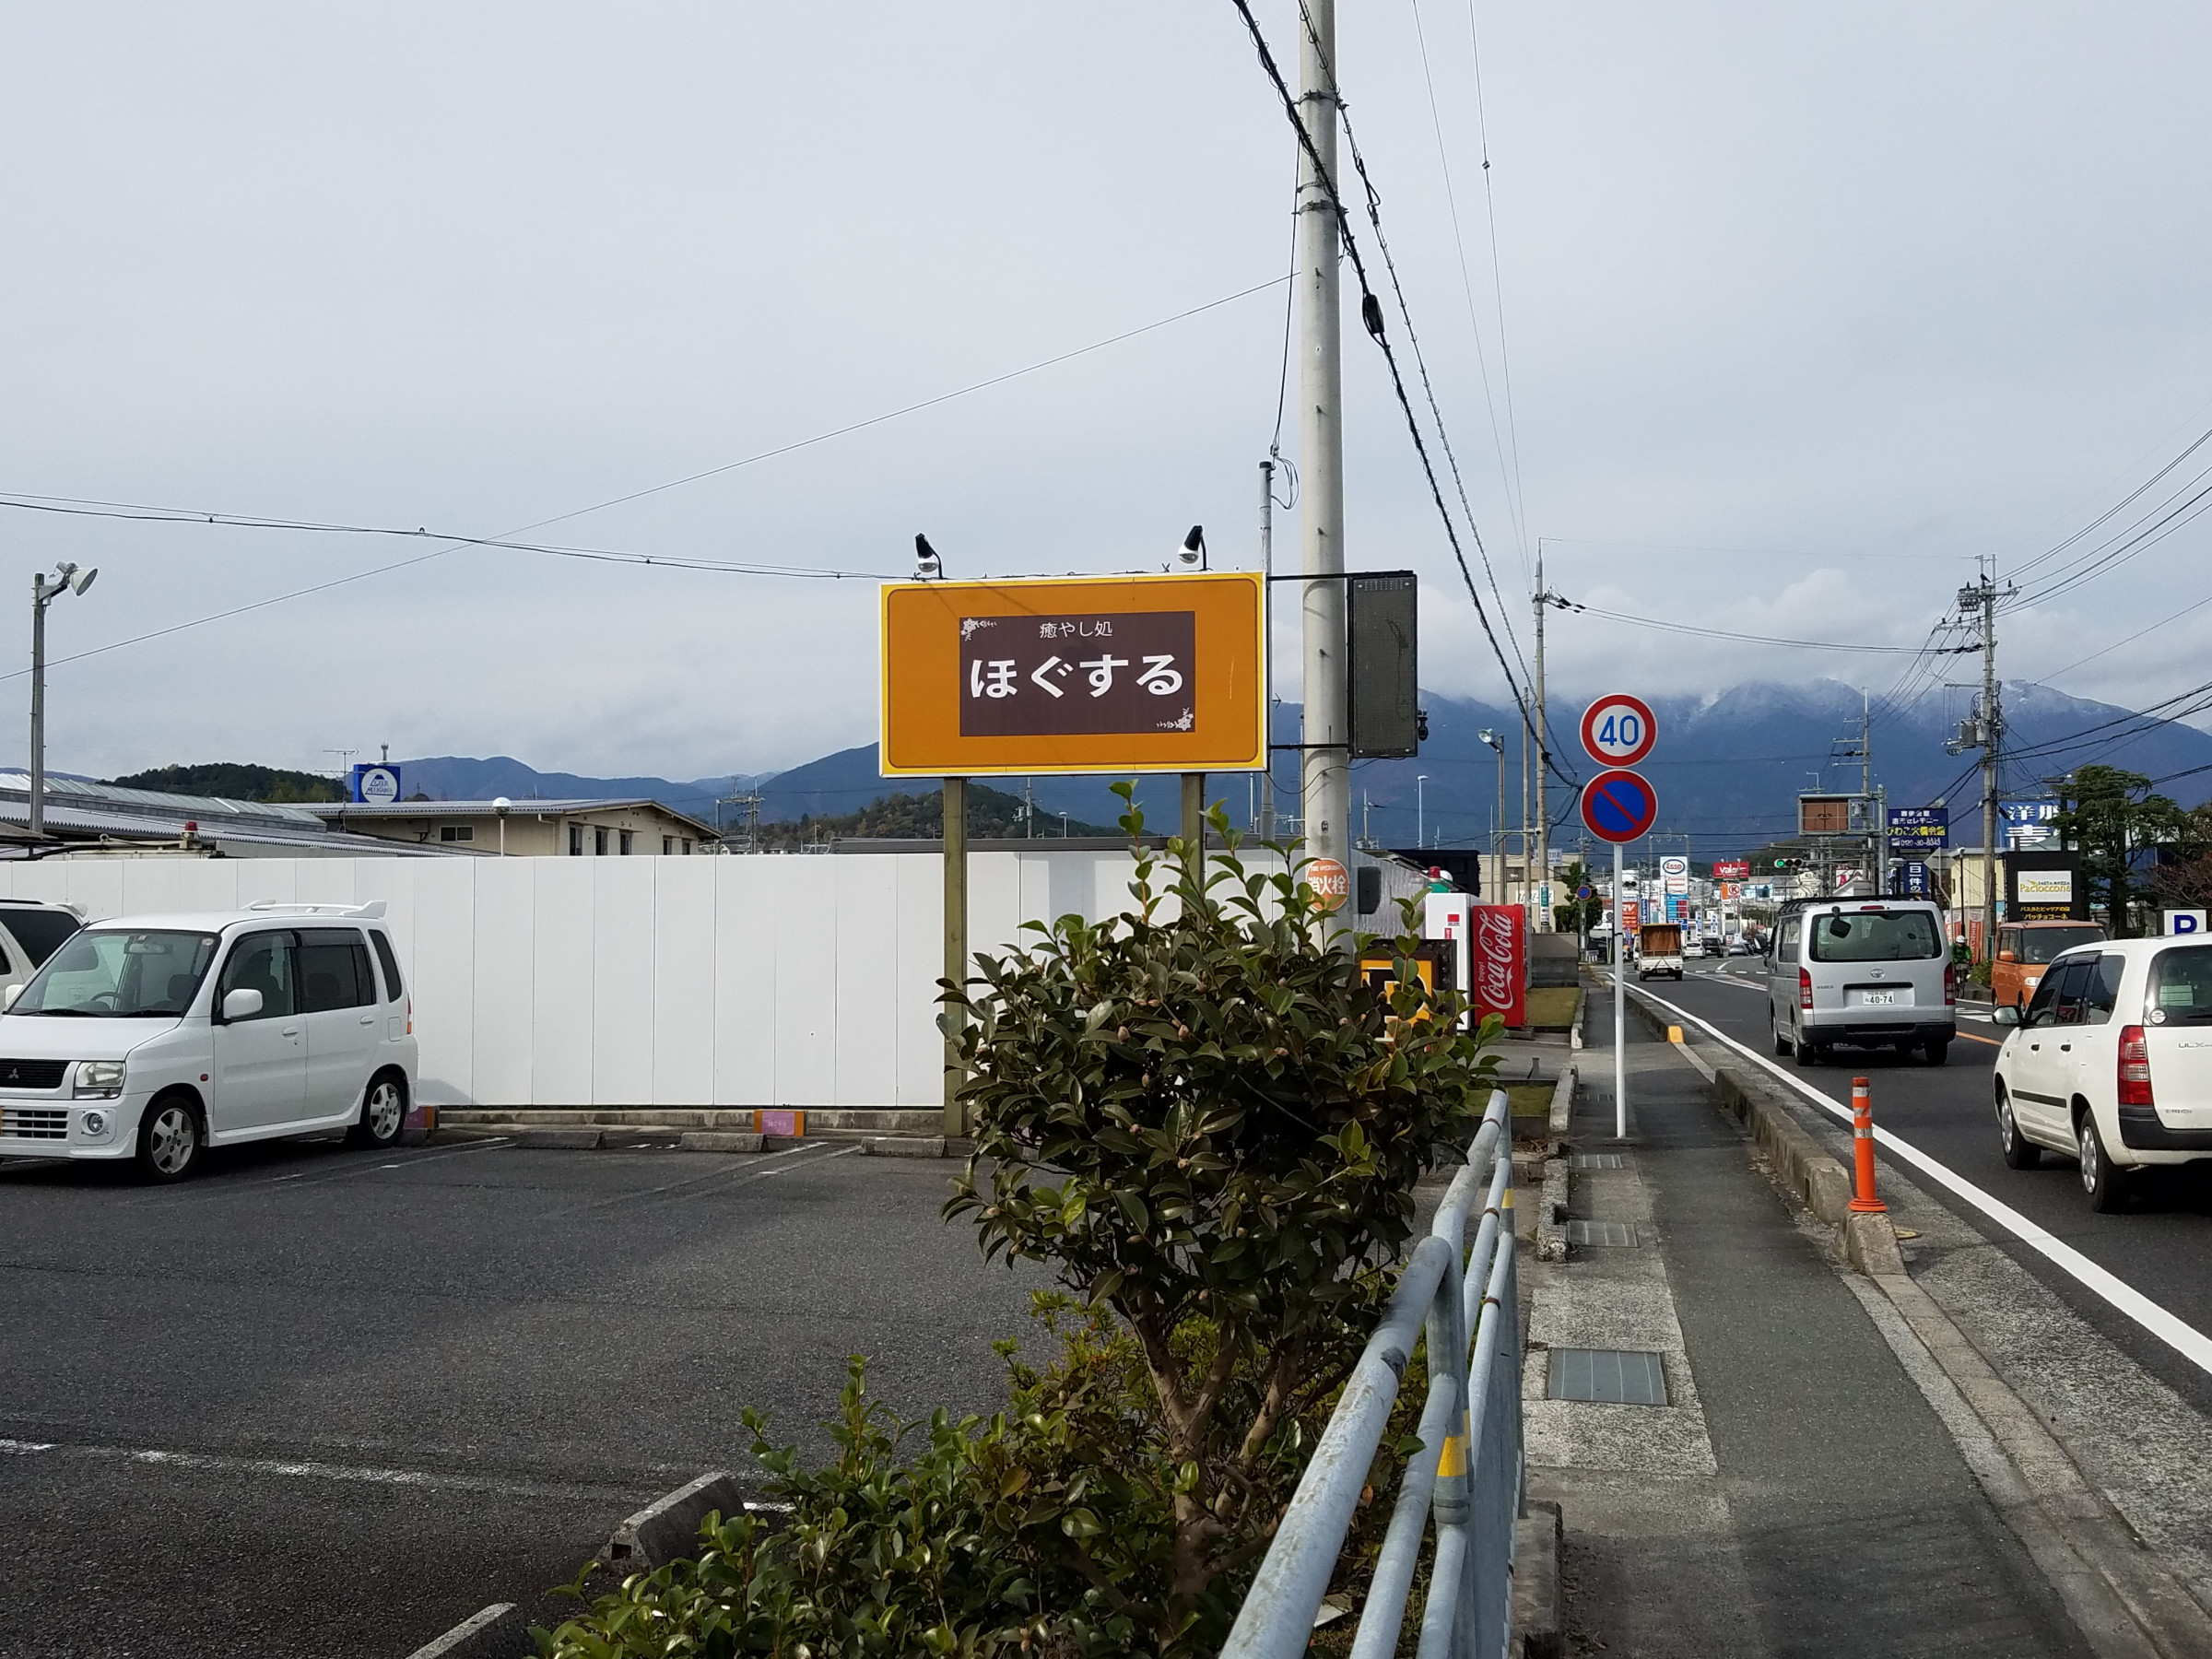 高島大津線を堅田から小野に向かって車を走らせると左側に